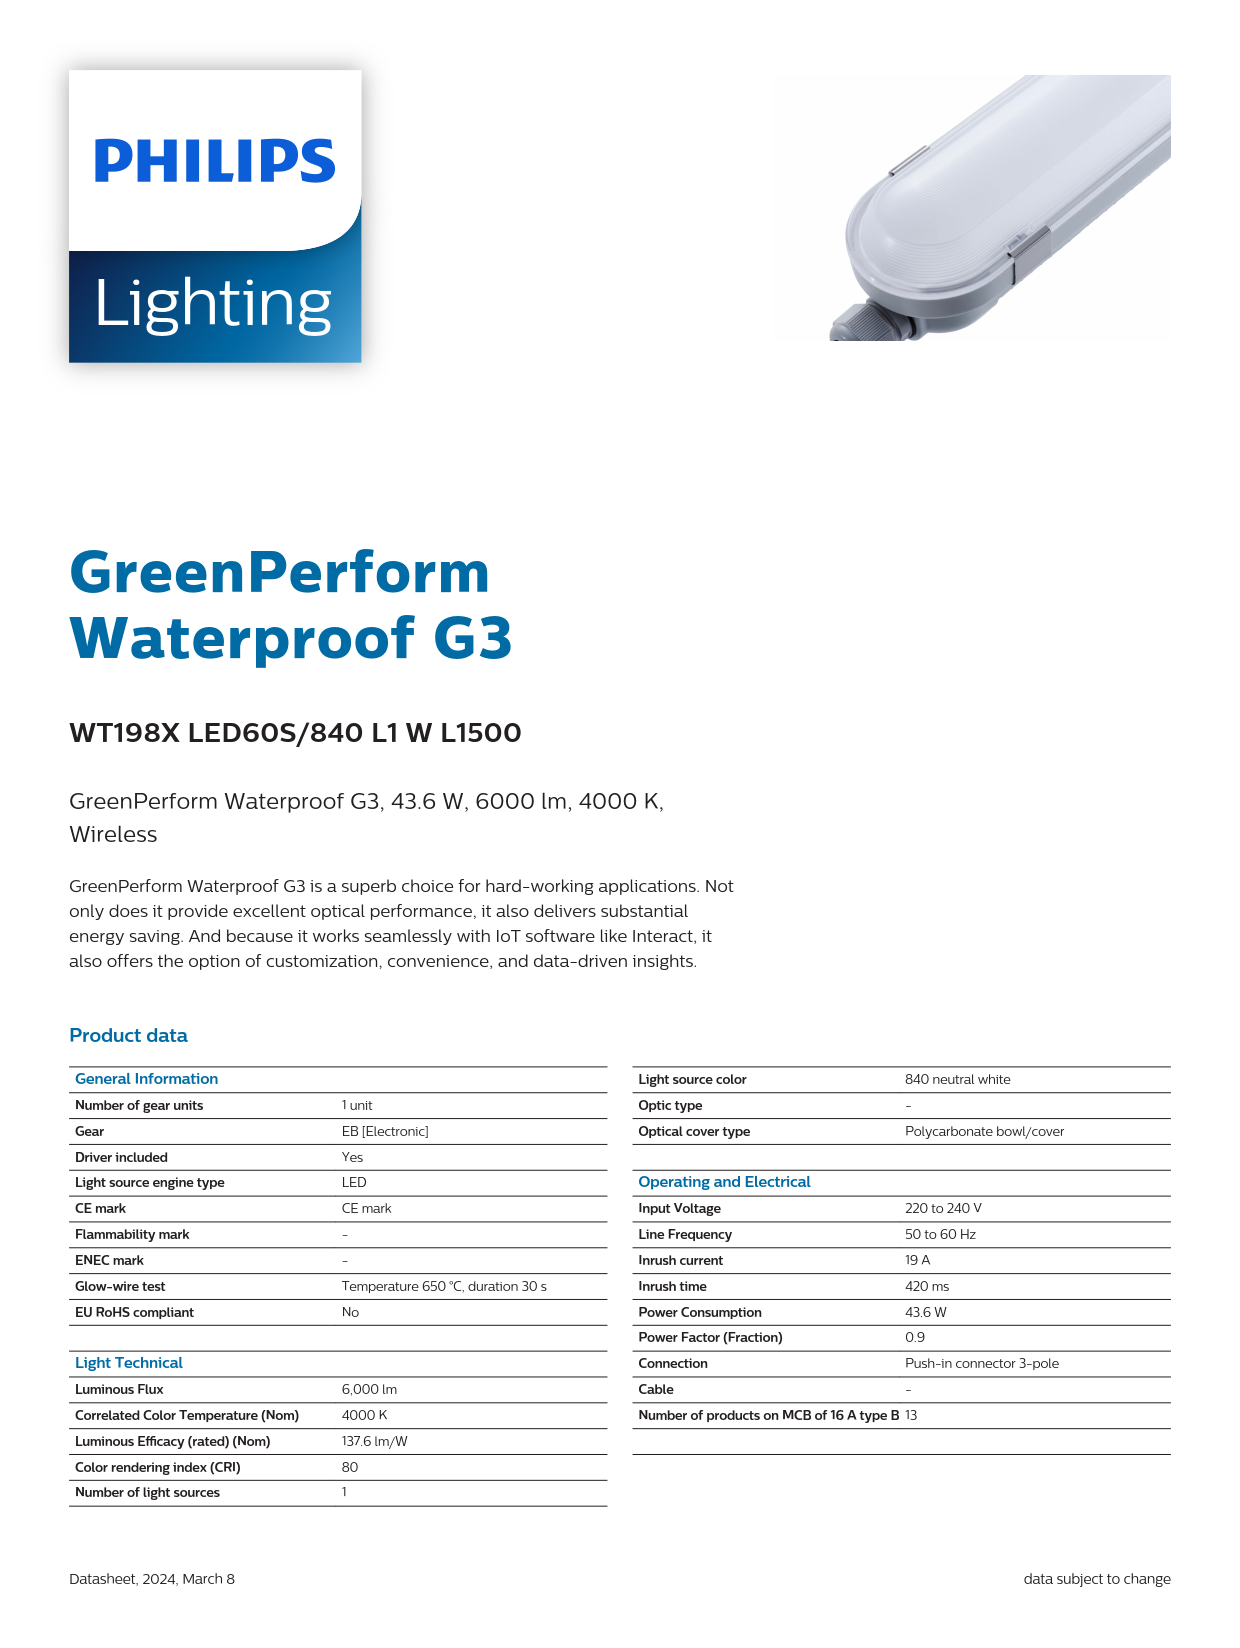 PHILIPS Waterproof Fixture light WT198X LED60S/840 L1 W L1500 911401551802